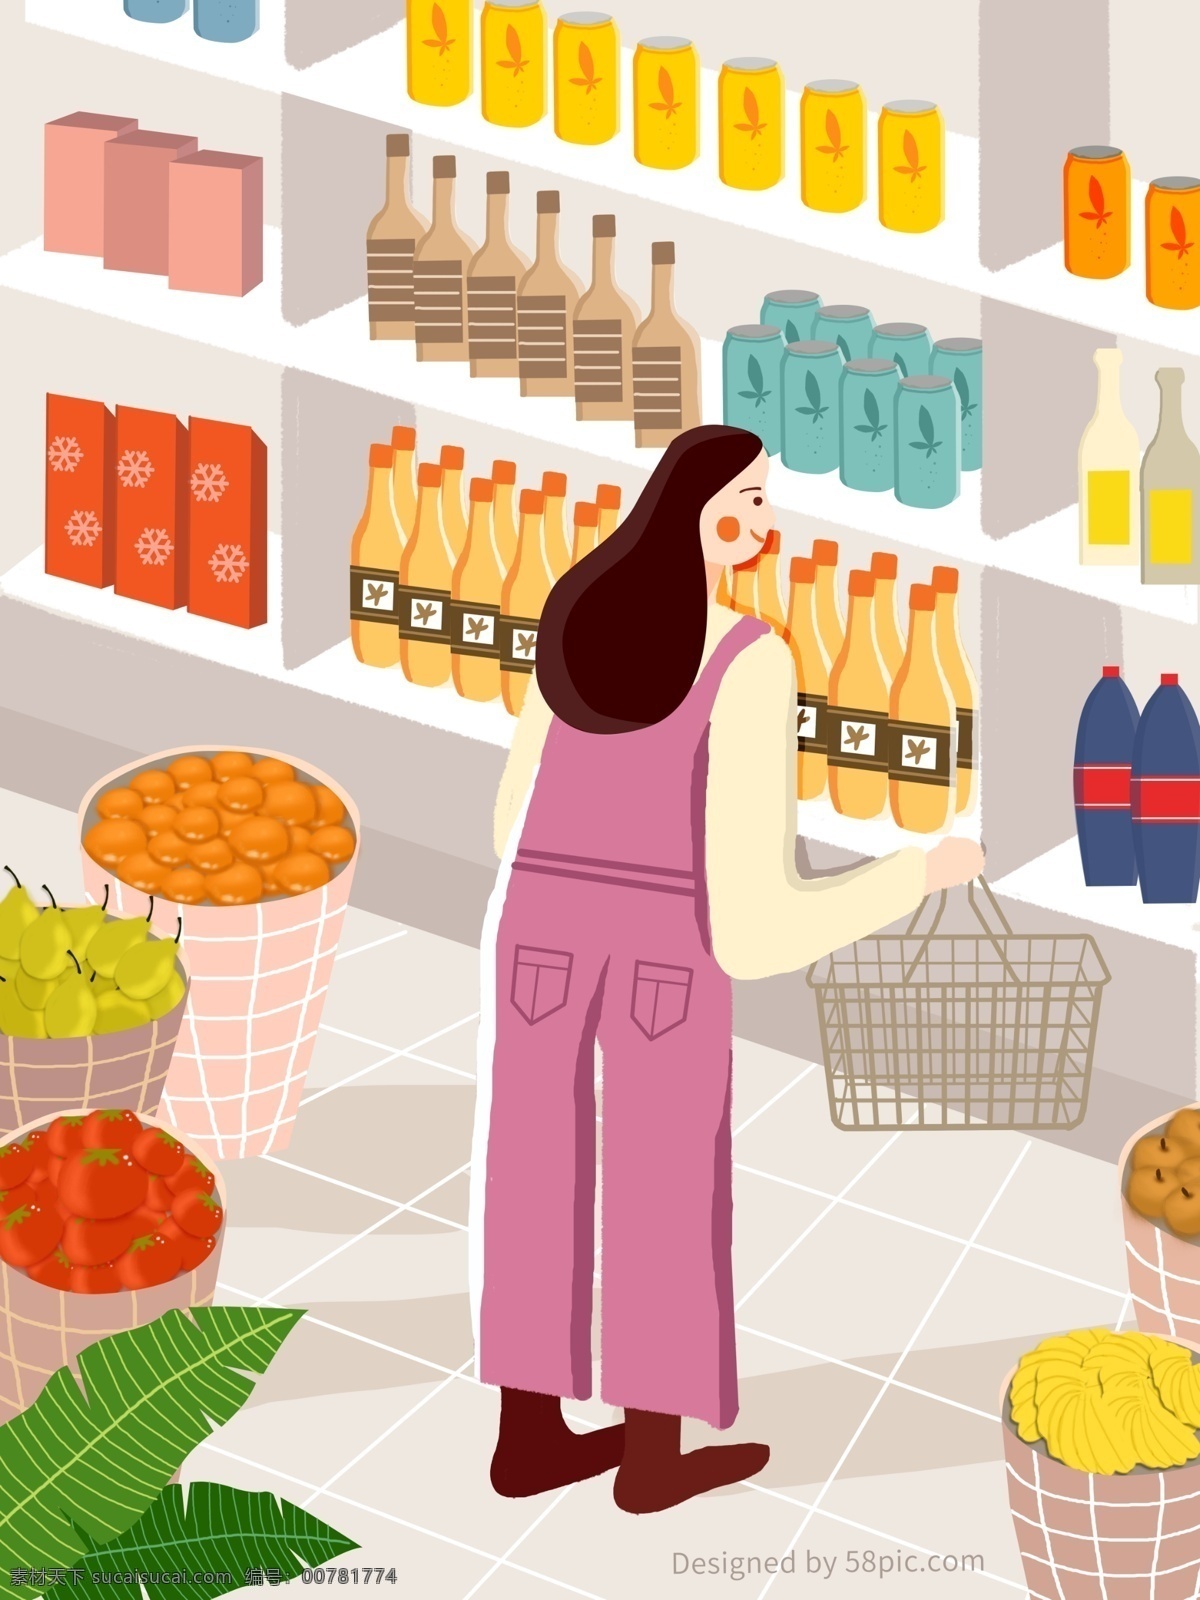 原创 超市 购物 女孩 扁平 插画 小清新 简约 扁平风 水果 货架 瓶子 购物场景